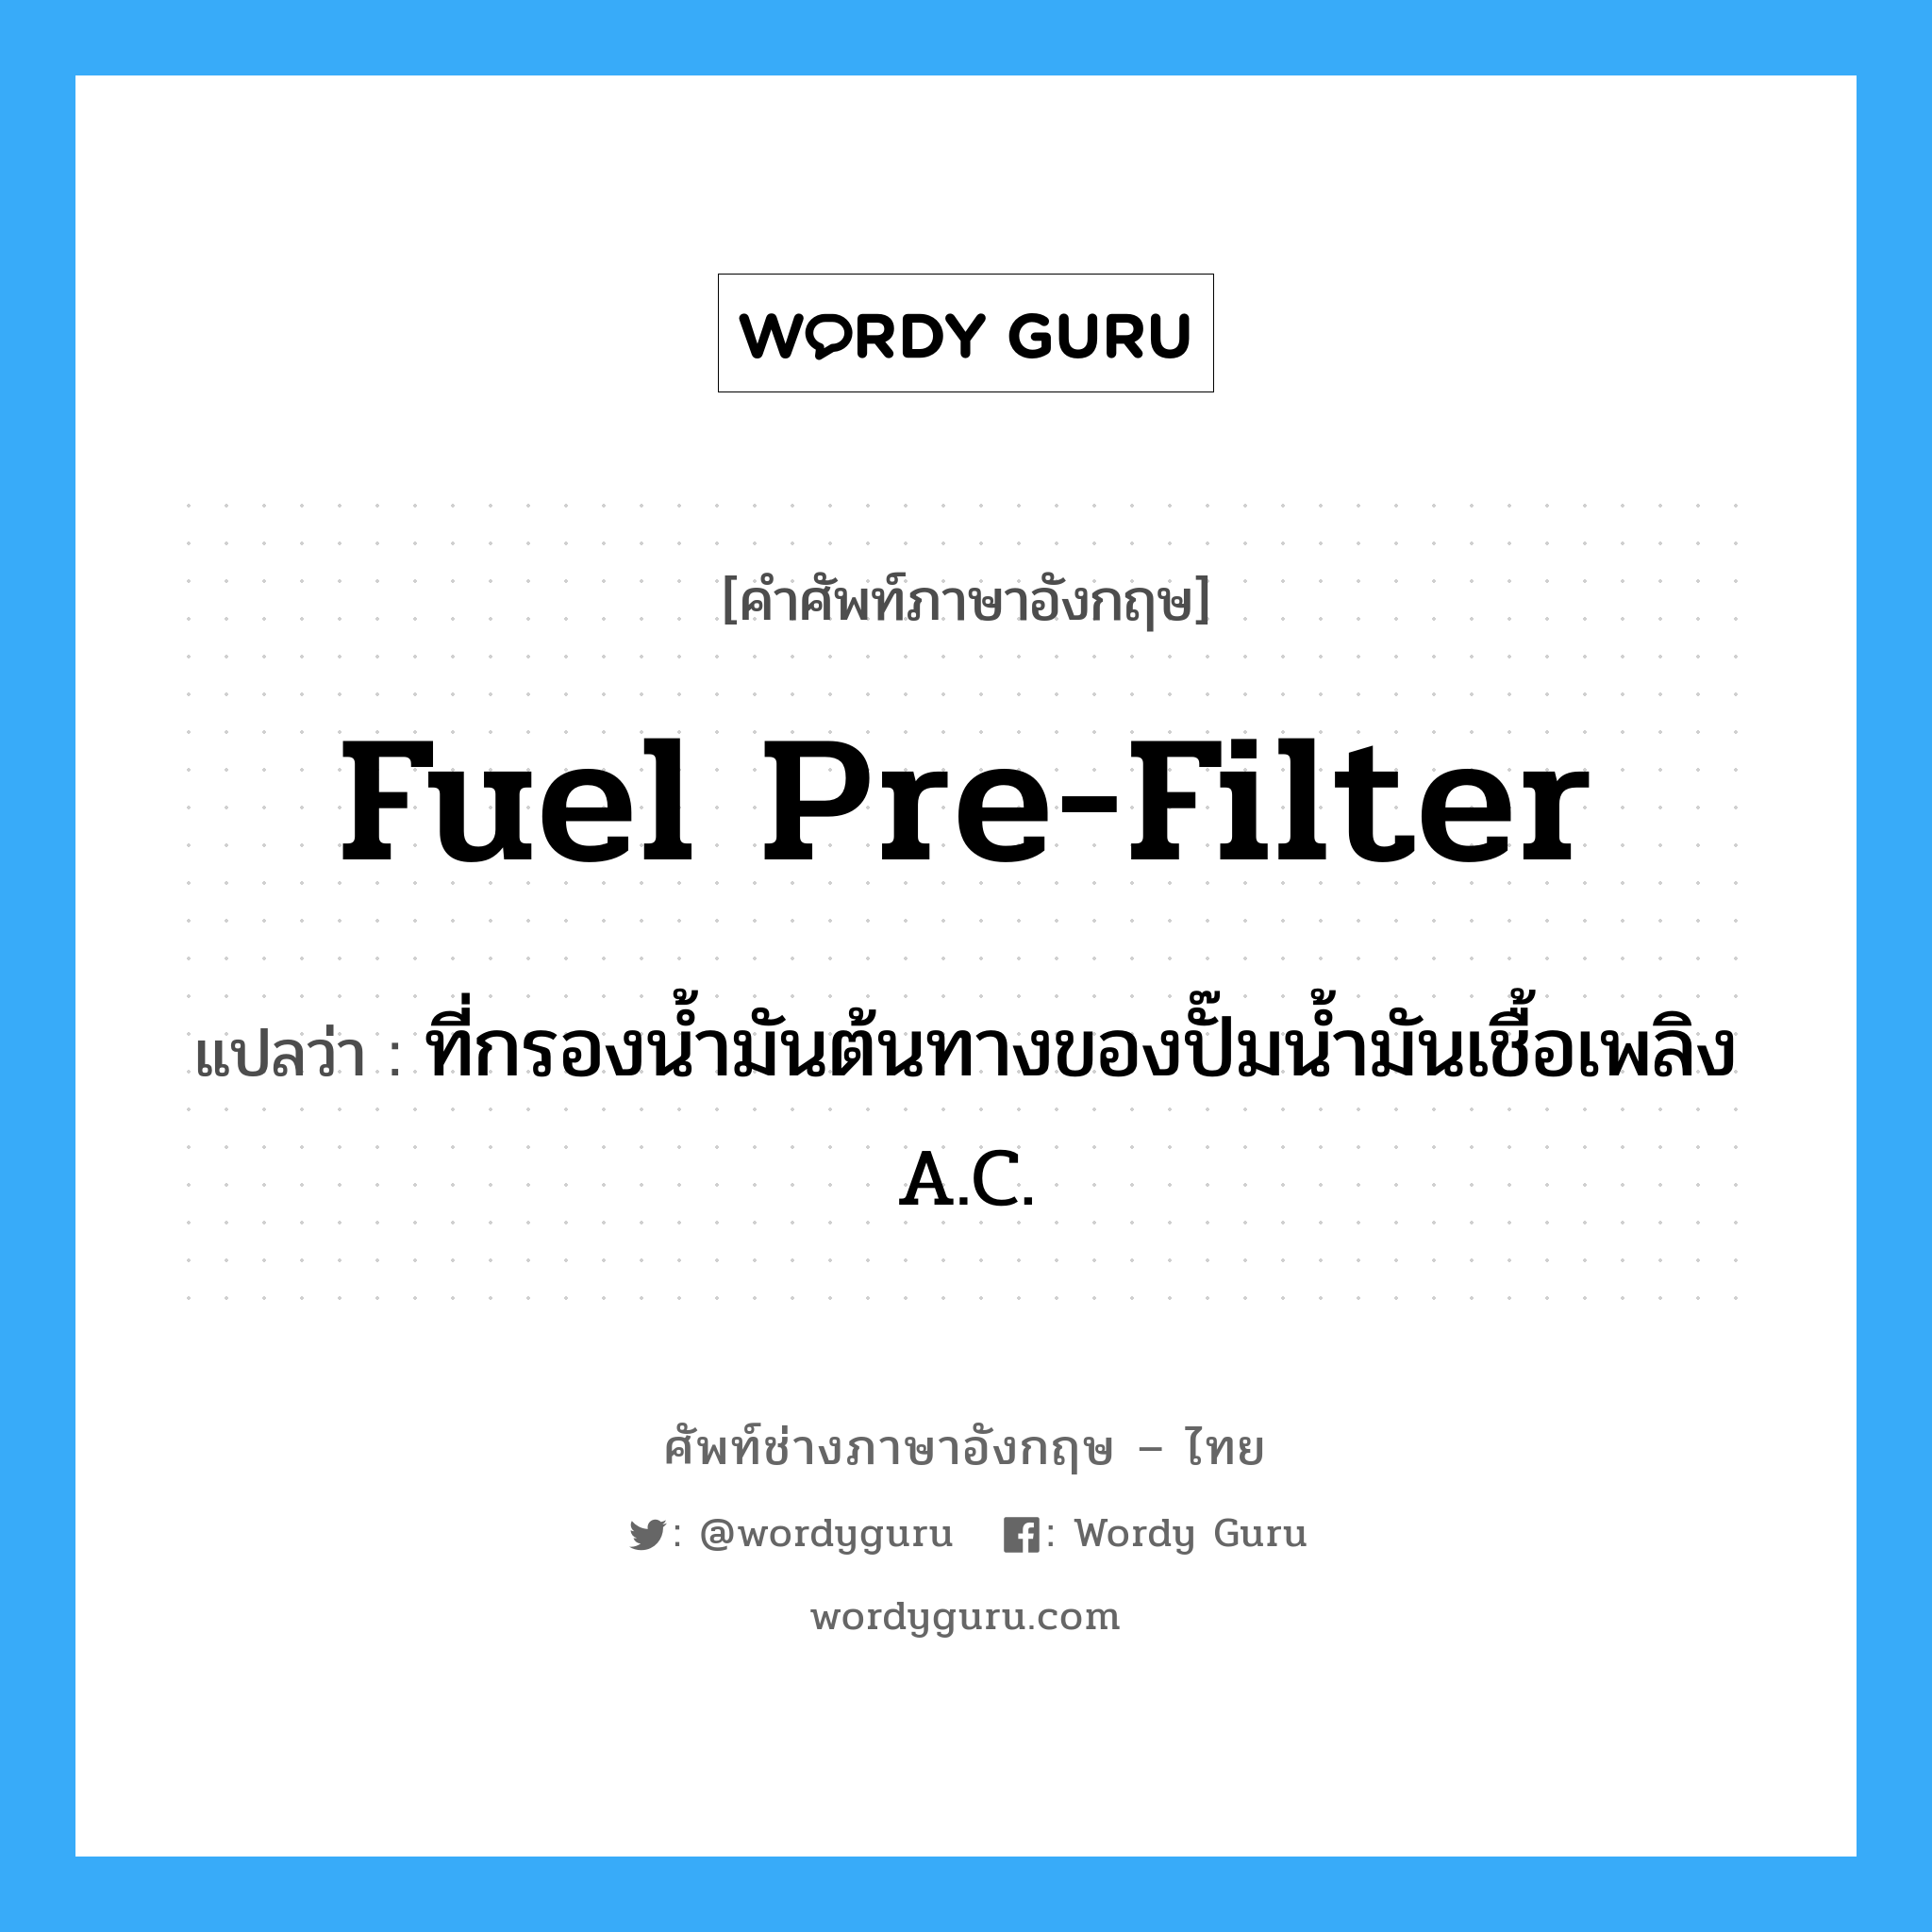 fuel pre-filter แปลว่า?, คำศัพท์ช่างภาษาอังกฤษ - ไทย fuel pre-filter คำศัพท์ภาษาอังกฤษ fuel pre-filter แปลว่า ที่กรองน้ำมันต้นทางของปั๊มน้ำมันเชื้อเพลิง A.C.